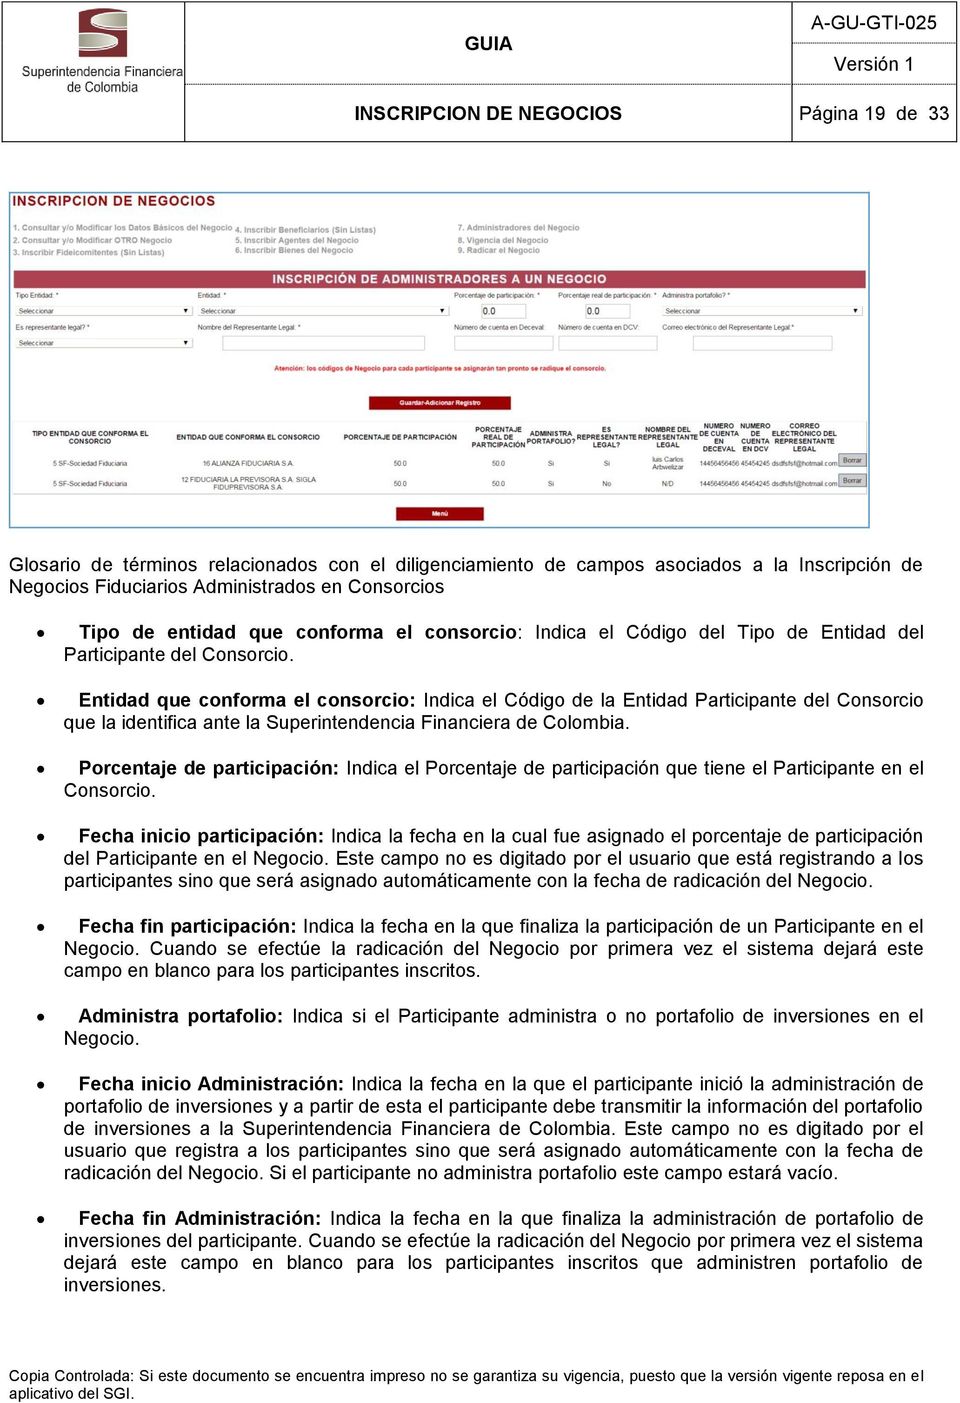 Entidad que conforma el consorcio: Indica el Código de la Entidad Participante del Consorcio que la identifica ante la Superintendencia Financiera de Colombia.